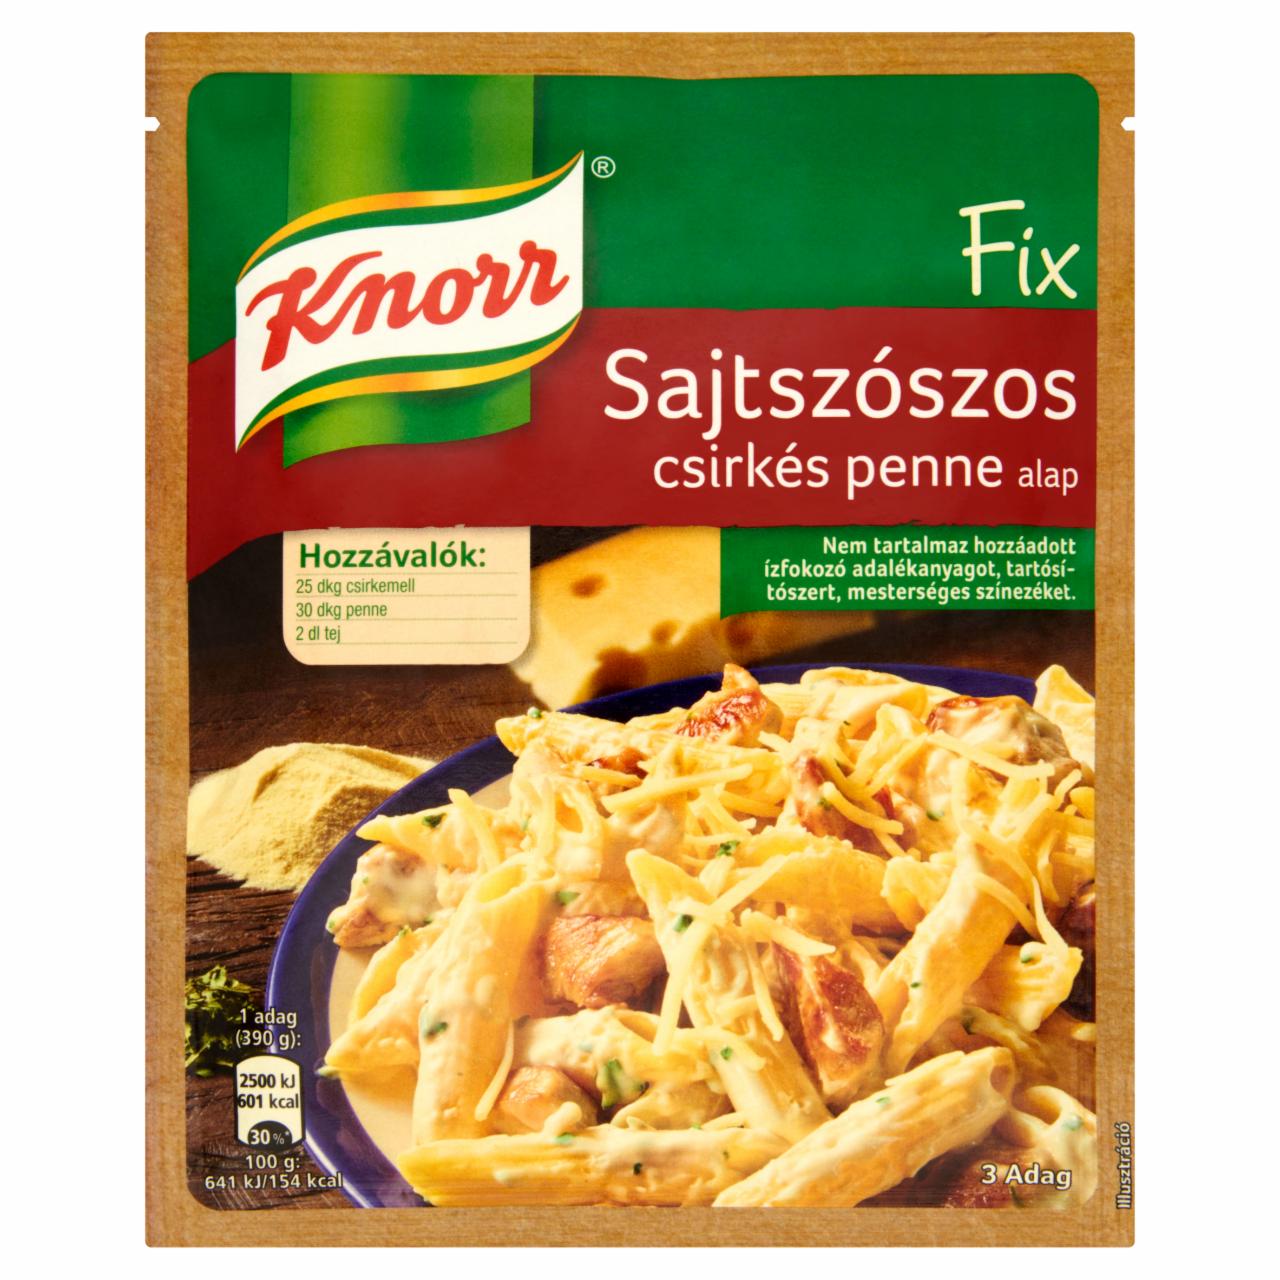 Képek - Knorr Fix sajtszószos csirkés penne alap 40 g